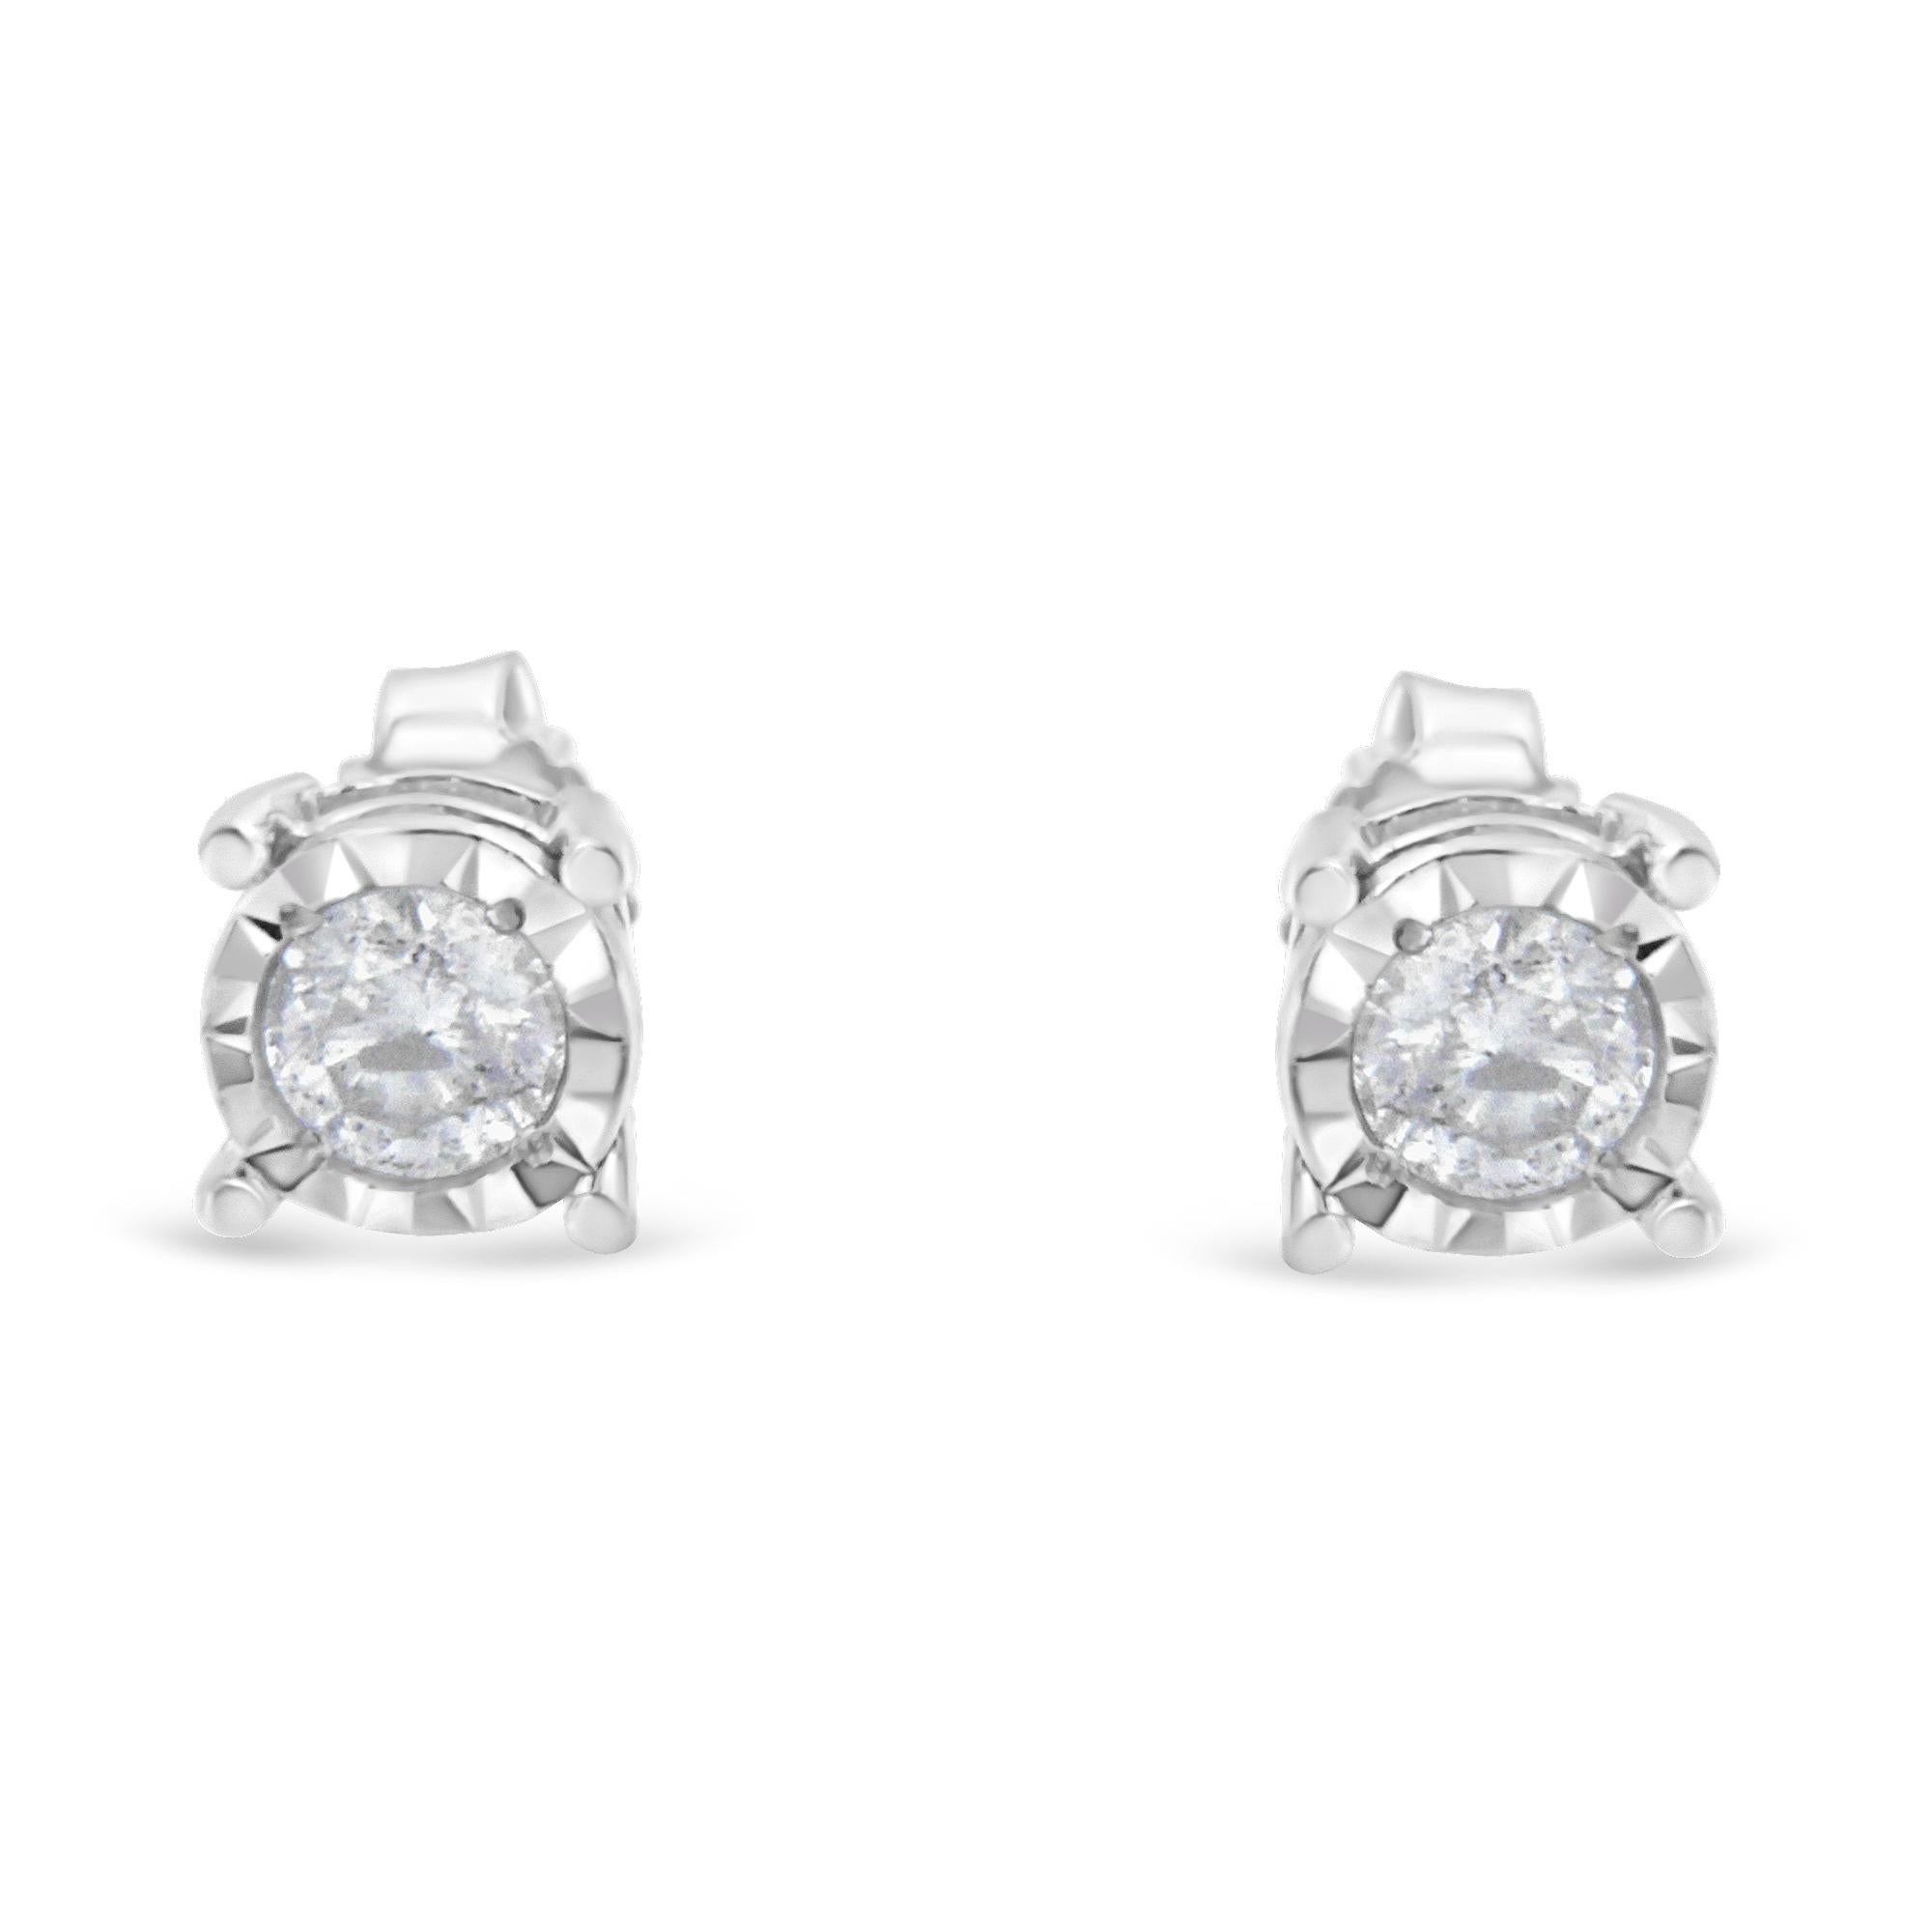 1 2 carat diamond stud earrings in sterling silver